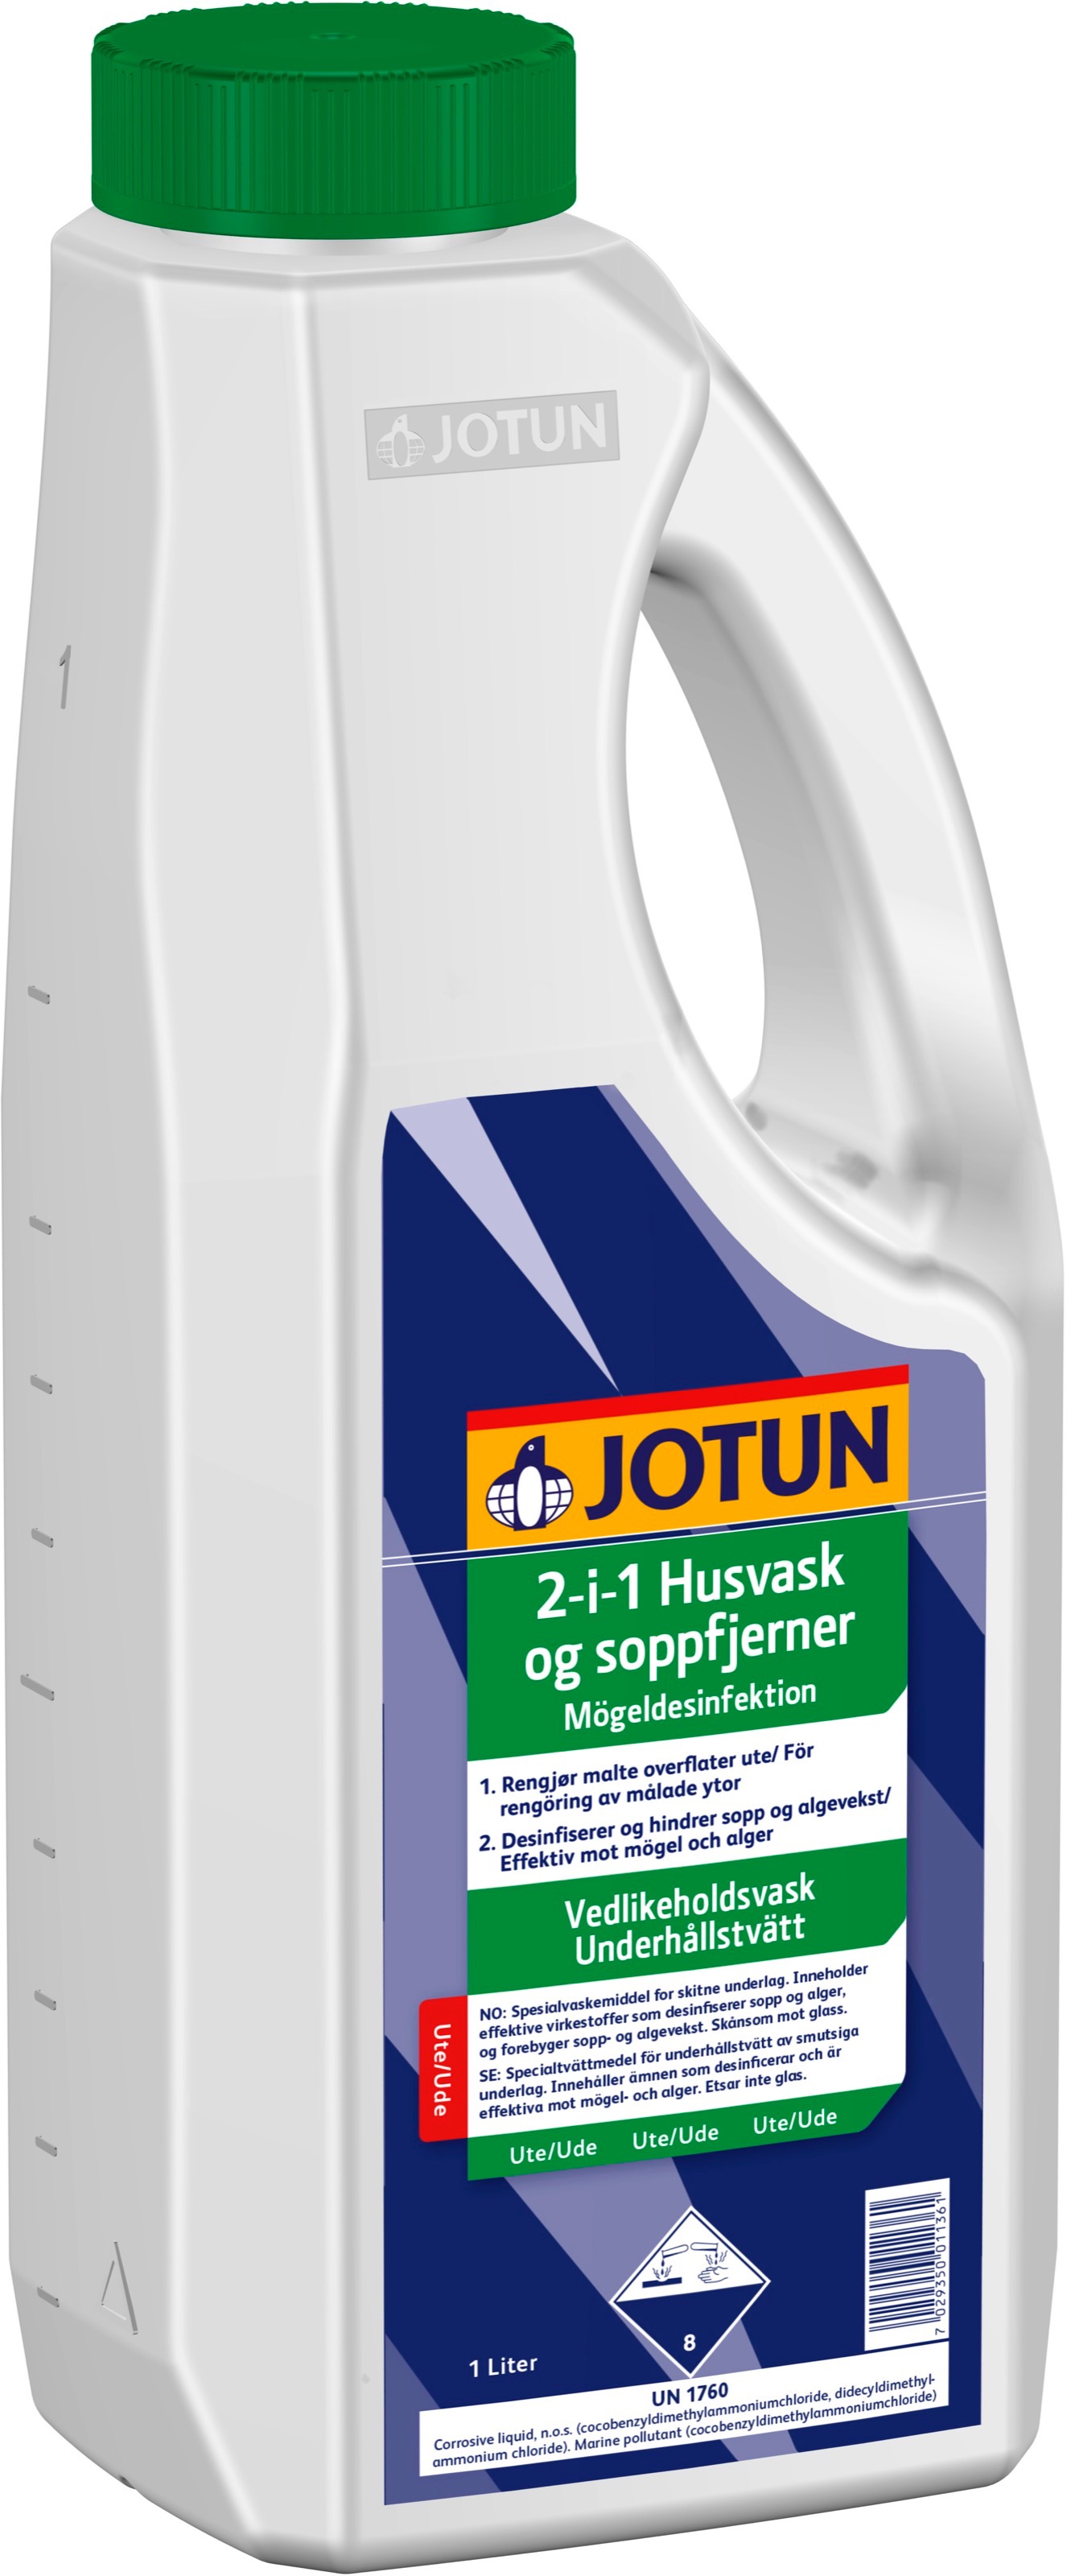 Jotun 2-i-1 husvask og soppfjerner